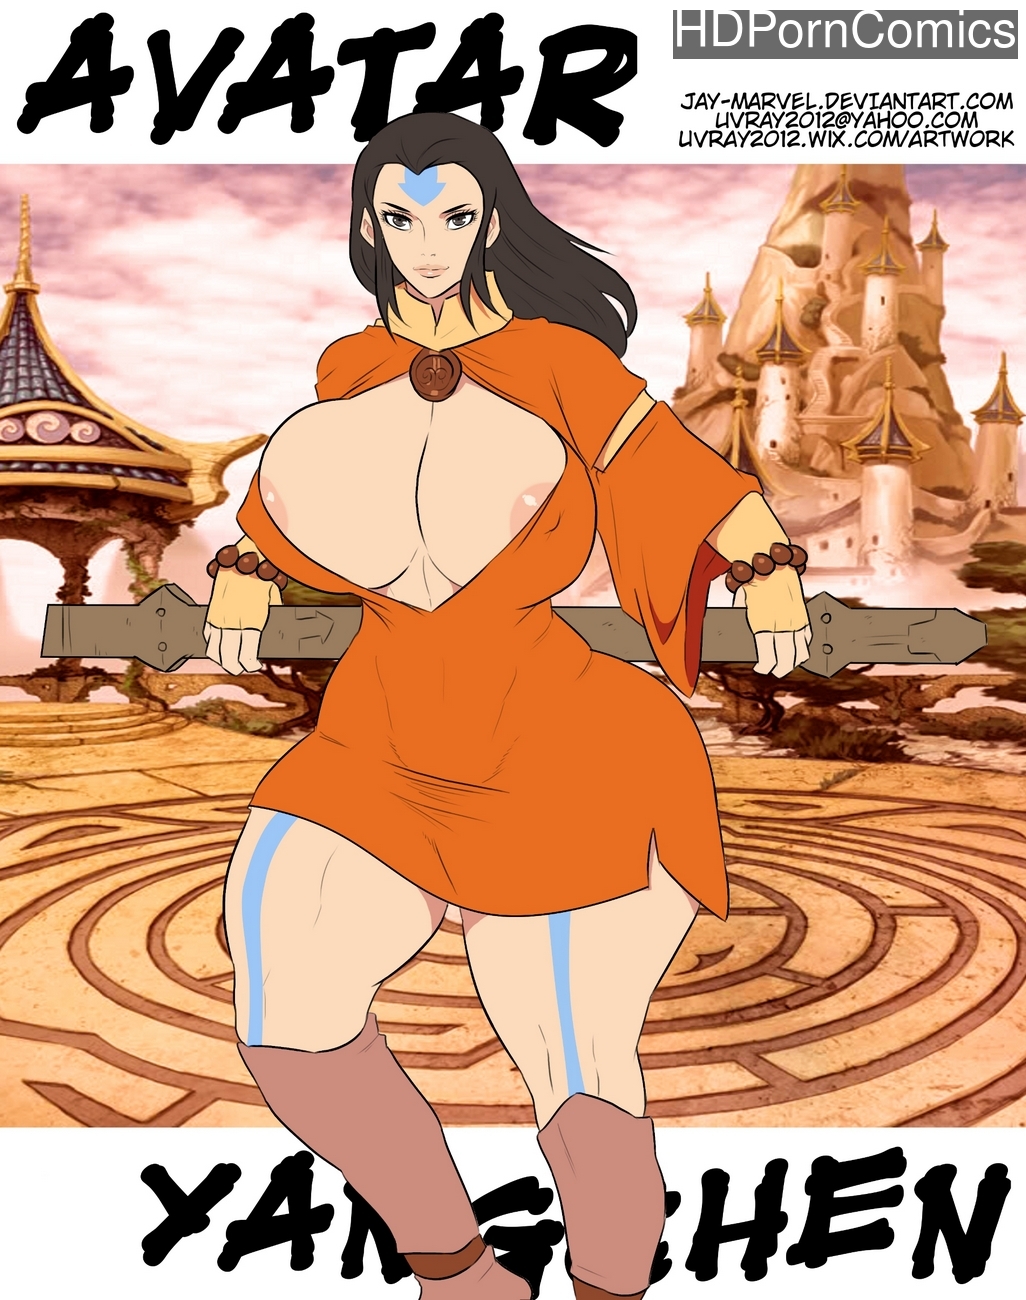 Cartoon Avatar Nude - Avatar Yangchen comic porn - HD Porn Comics